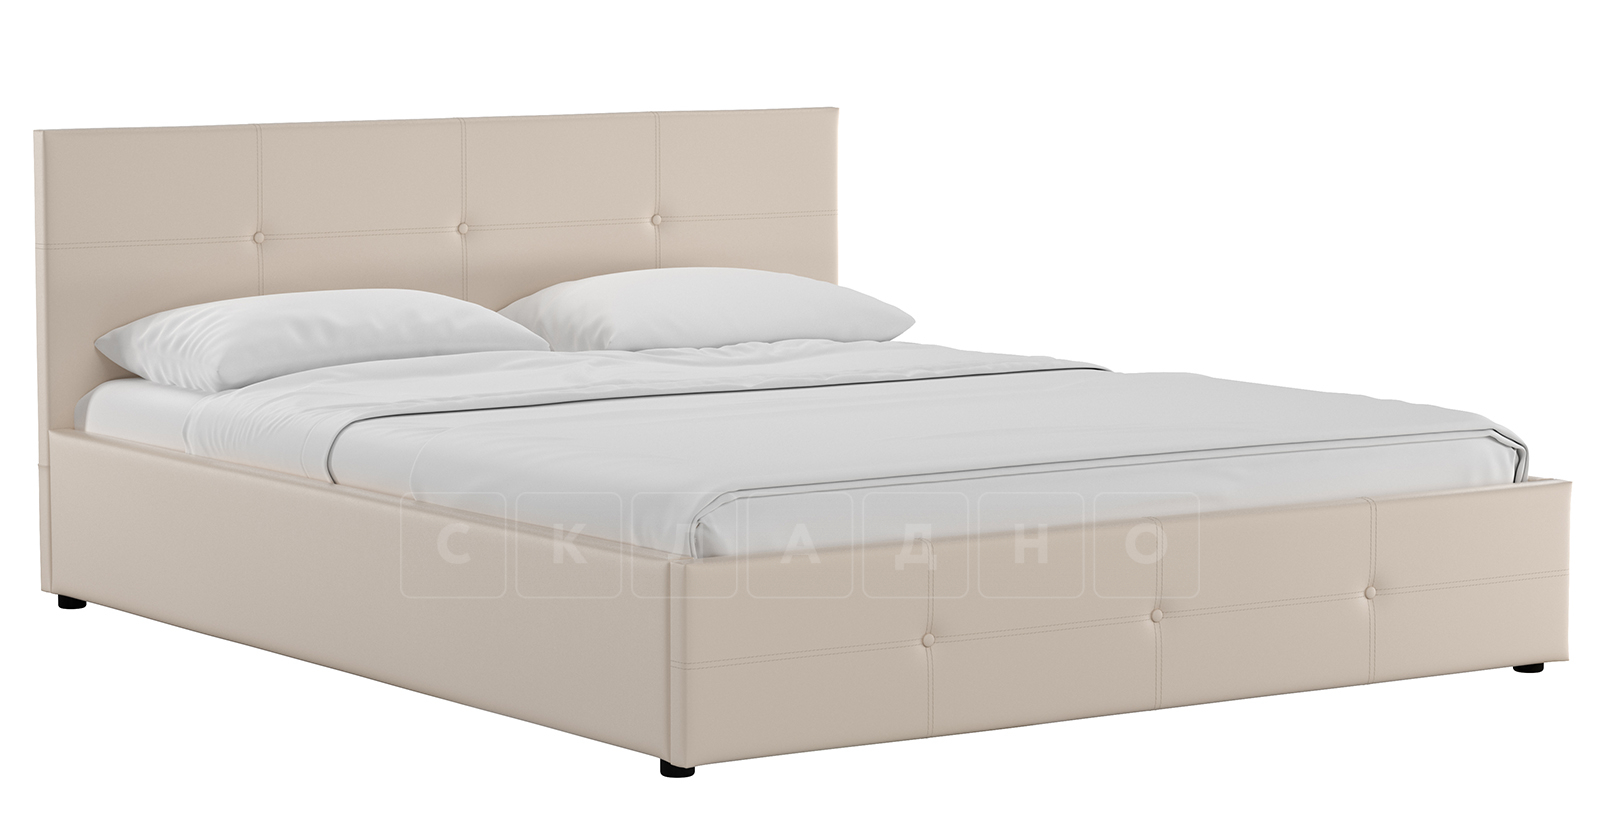 Мягкая кровать Синди 160 см бежевый без подъемного механизма фото 1 | интернет-магазин Складно